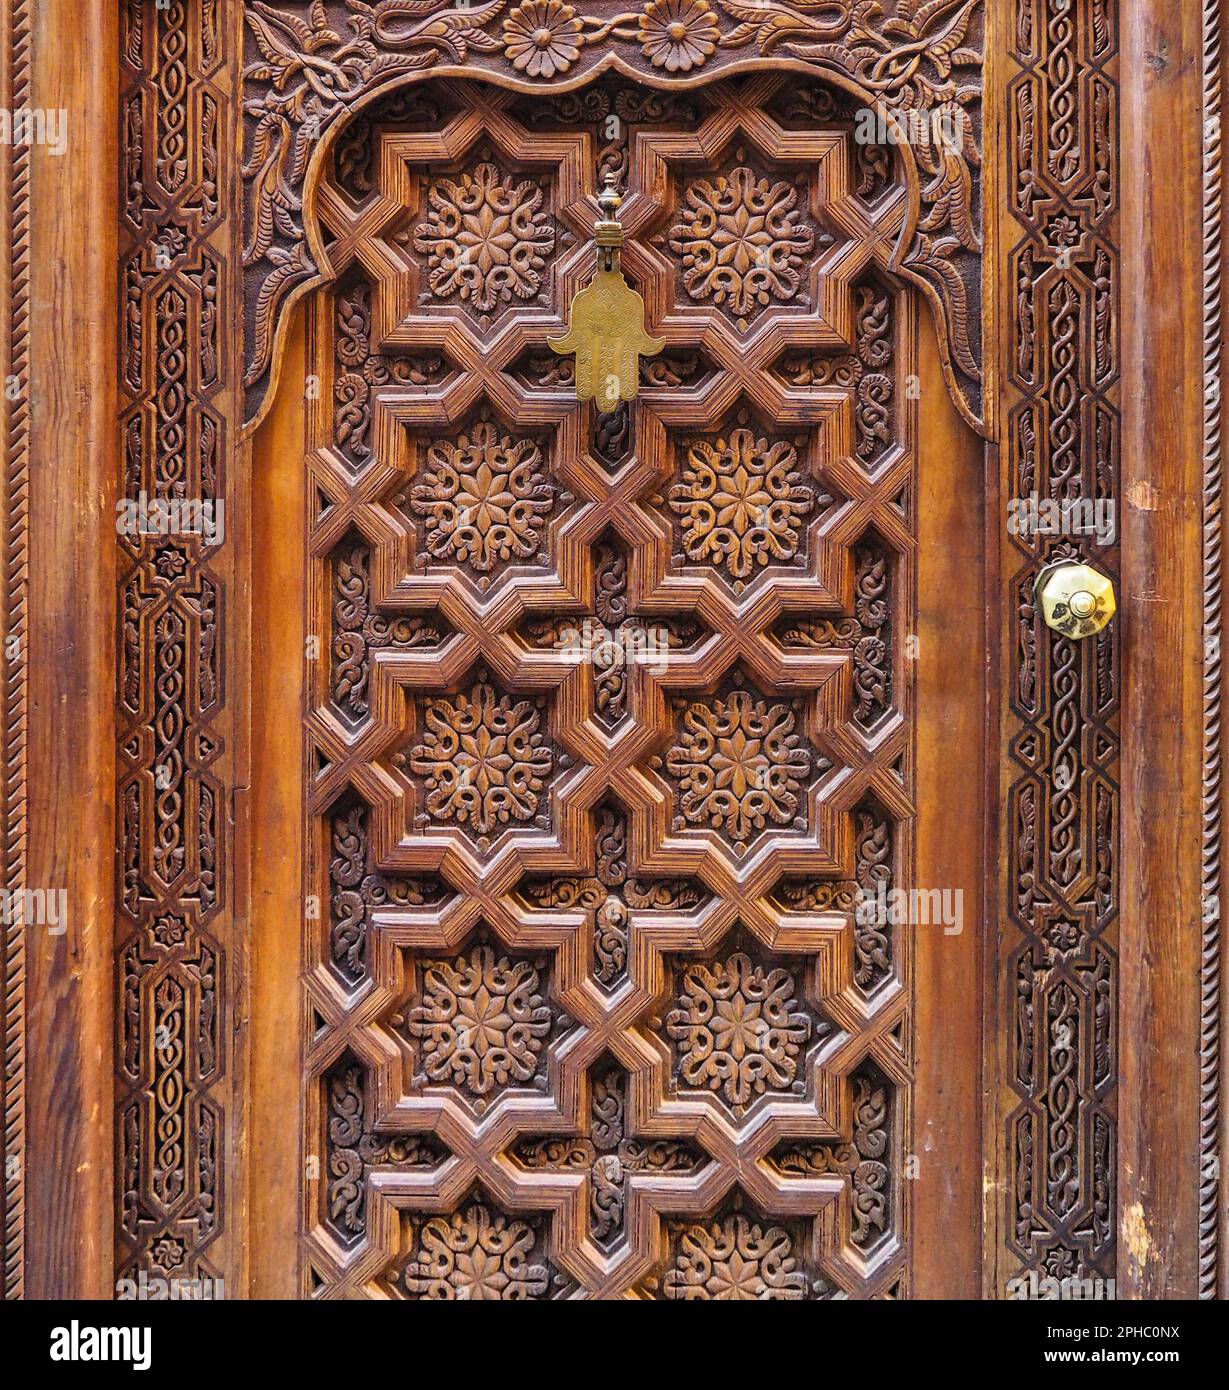 Ancienne porte en bois décorée avec des ornements orientaux typiques du Maroc, hamsa en métal - amulette en forme de paume - accrochée sur le dessus Banque D'Images